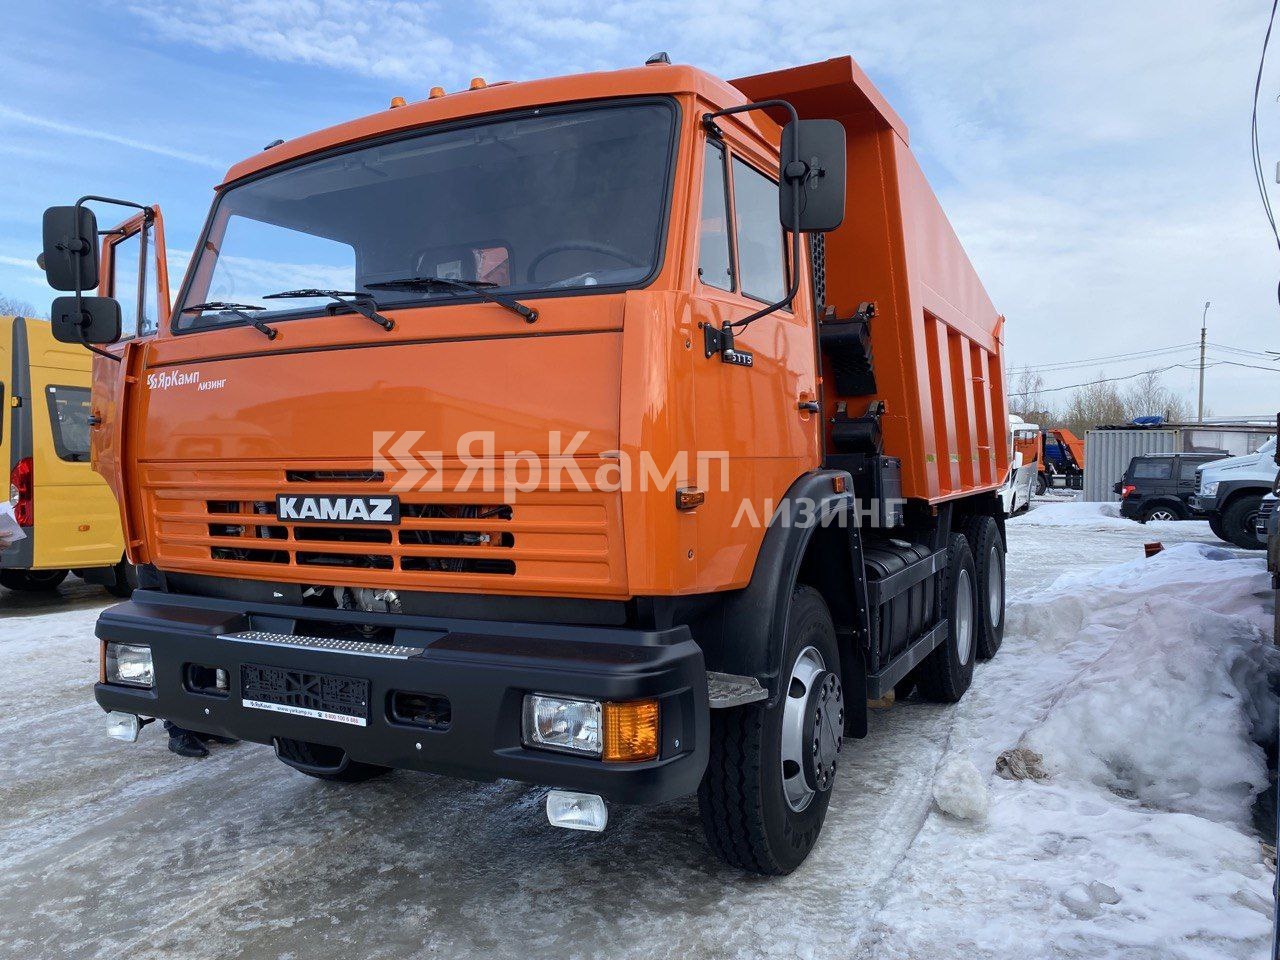 Специализированный автомобиль - самосвал КАМАЗ 65115 передан на условиях финансовой аренды